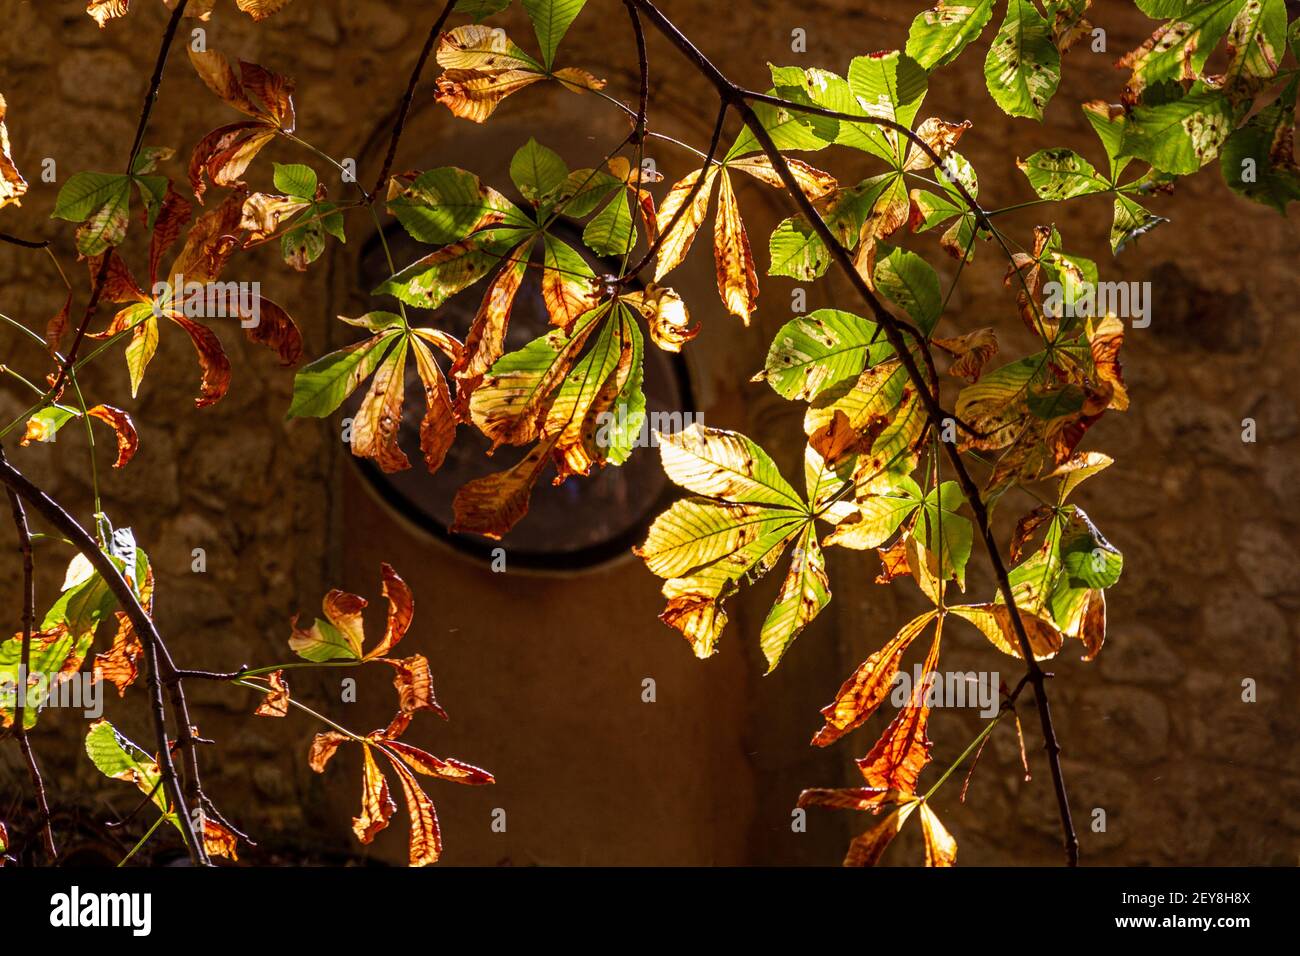 Primer plano de hojas verdes y marrones retroiluminadas en un árbol con una pared de piedra en el fondo Foto de stock